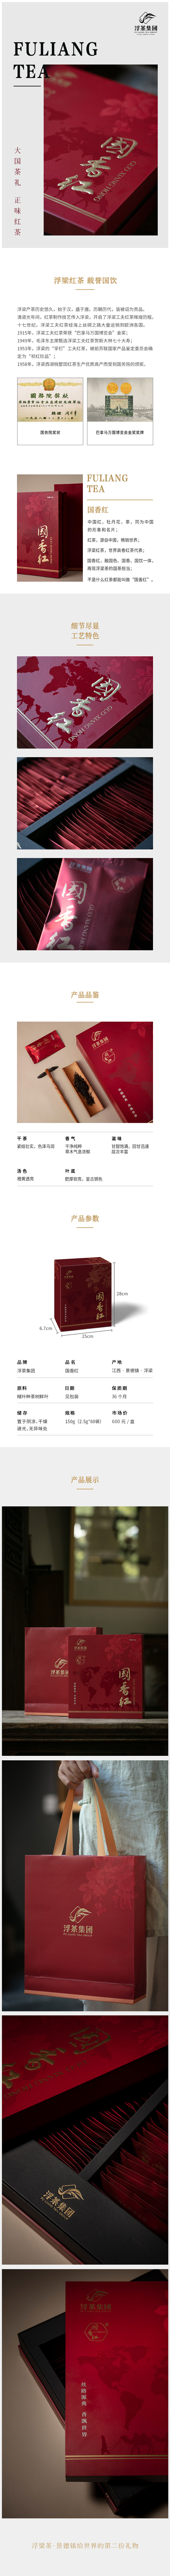 浮梁红茶 国香红 规格:150g（2.5g*60袋）/盒